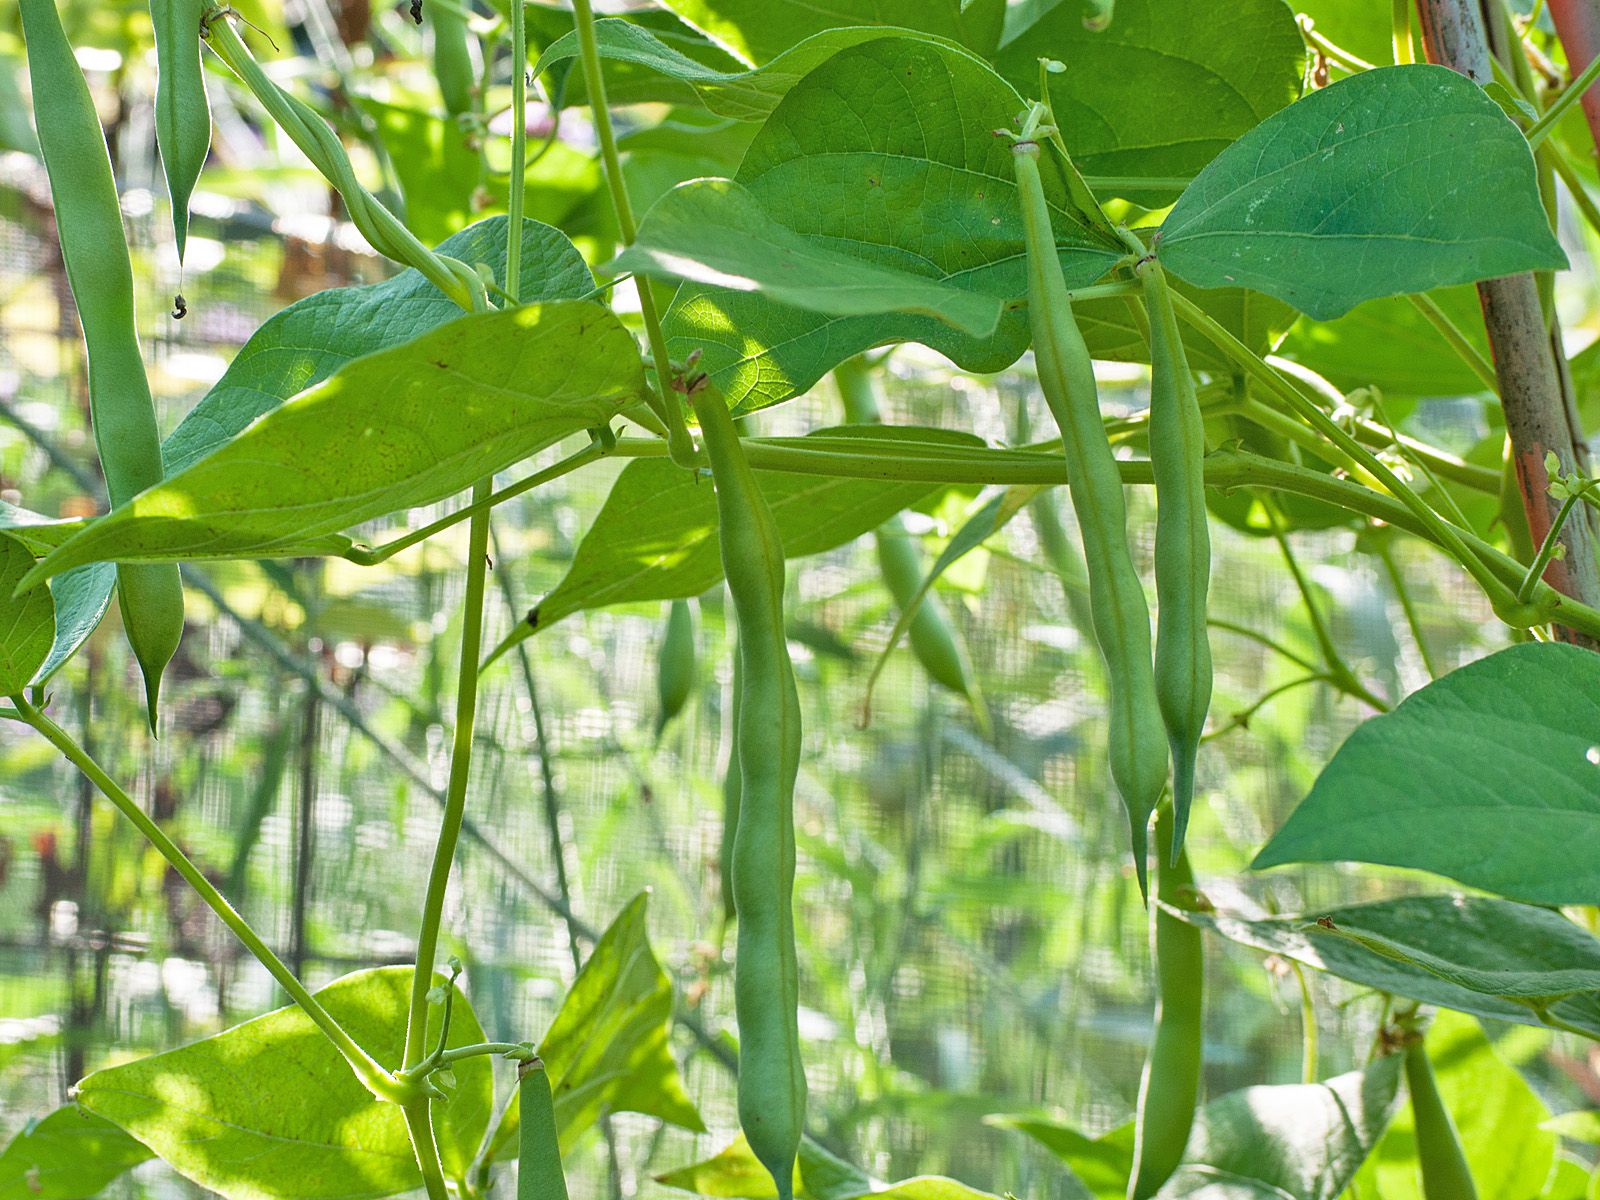 Growing Green Beans in Your Garden